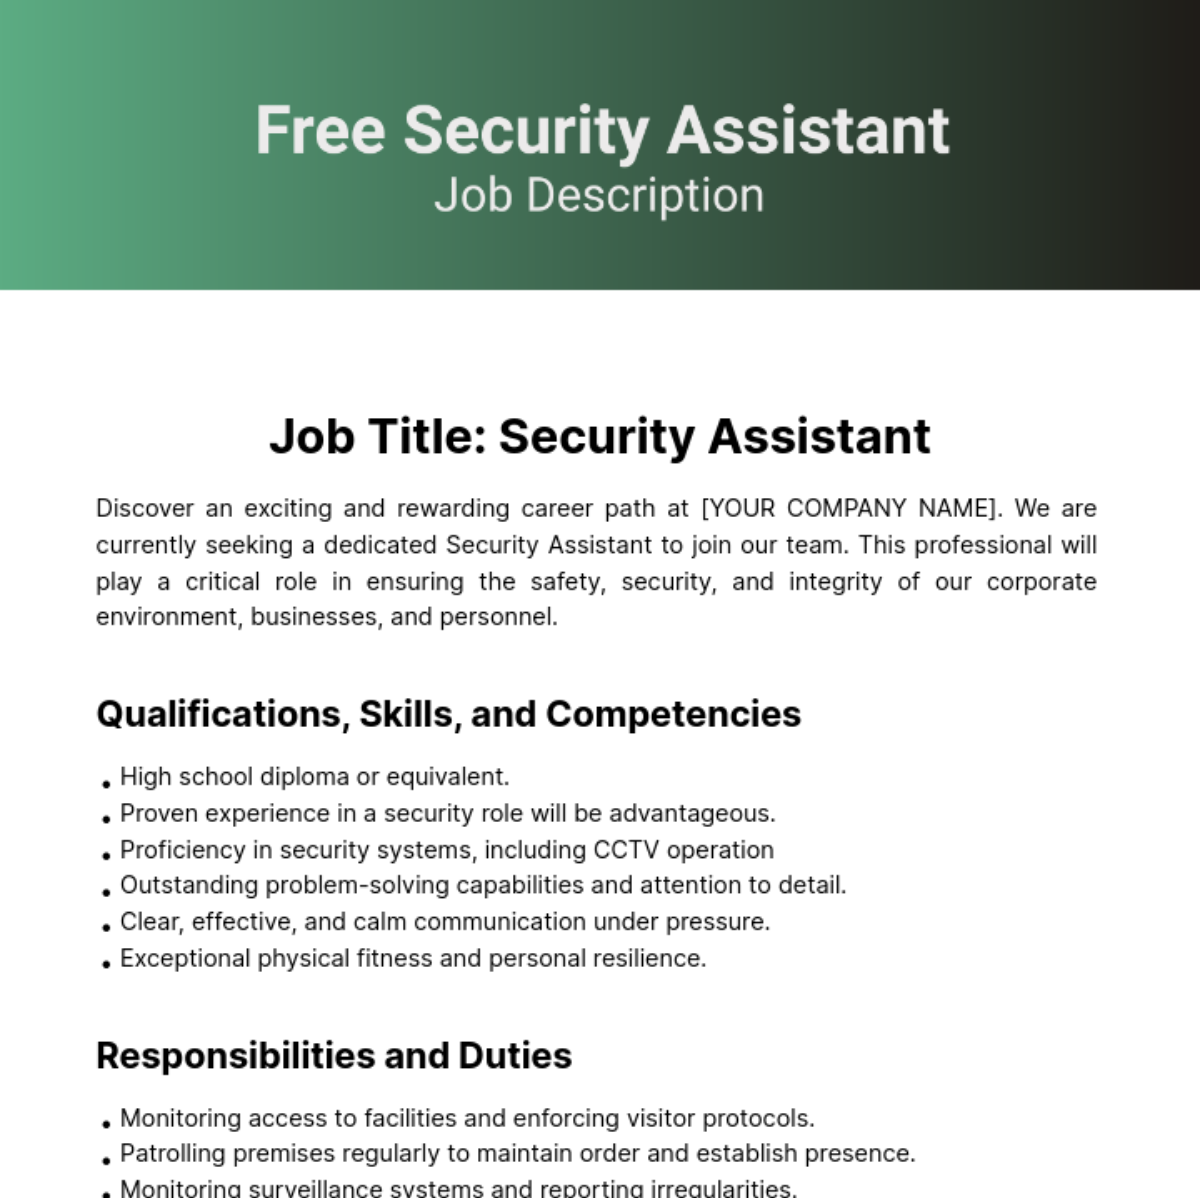 Security Assistant Job Description Template